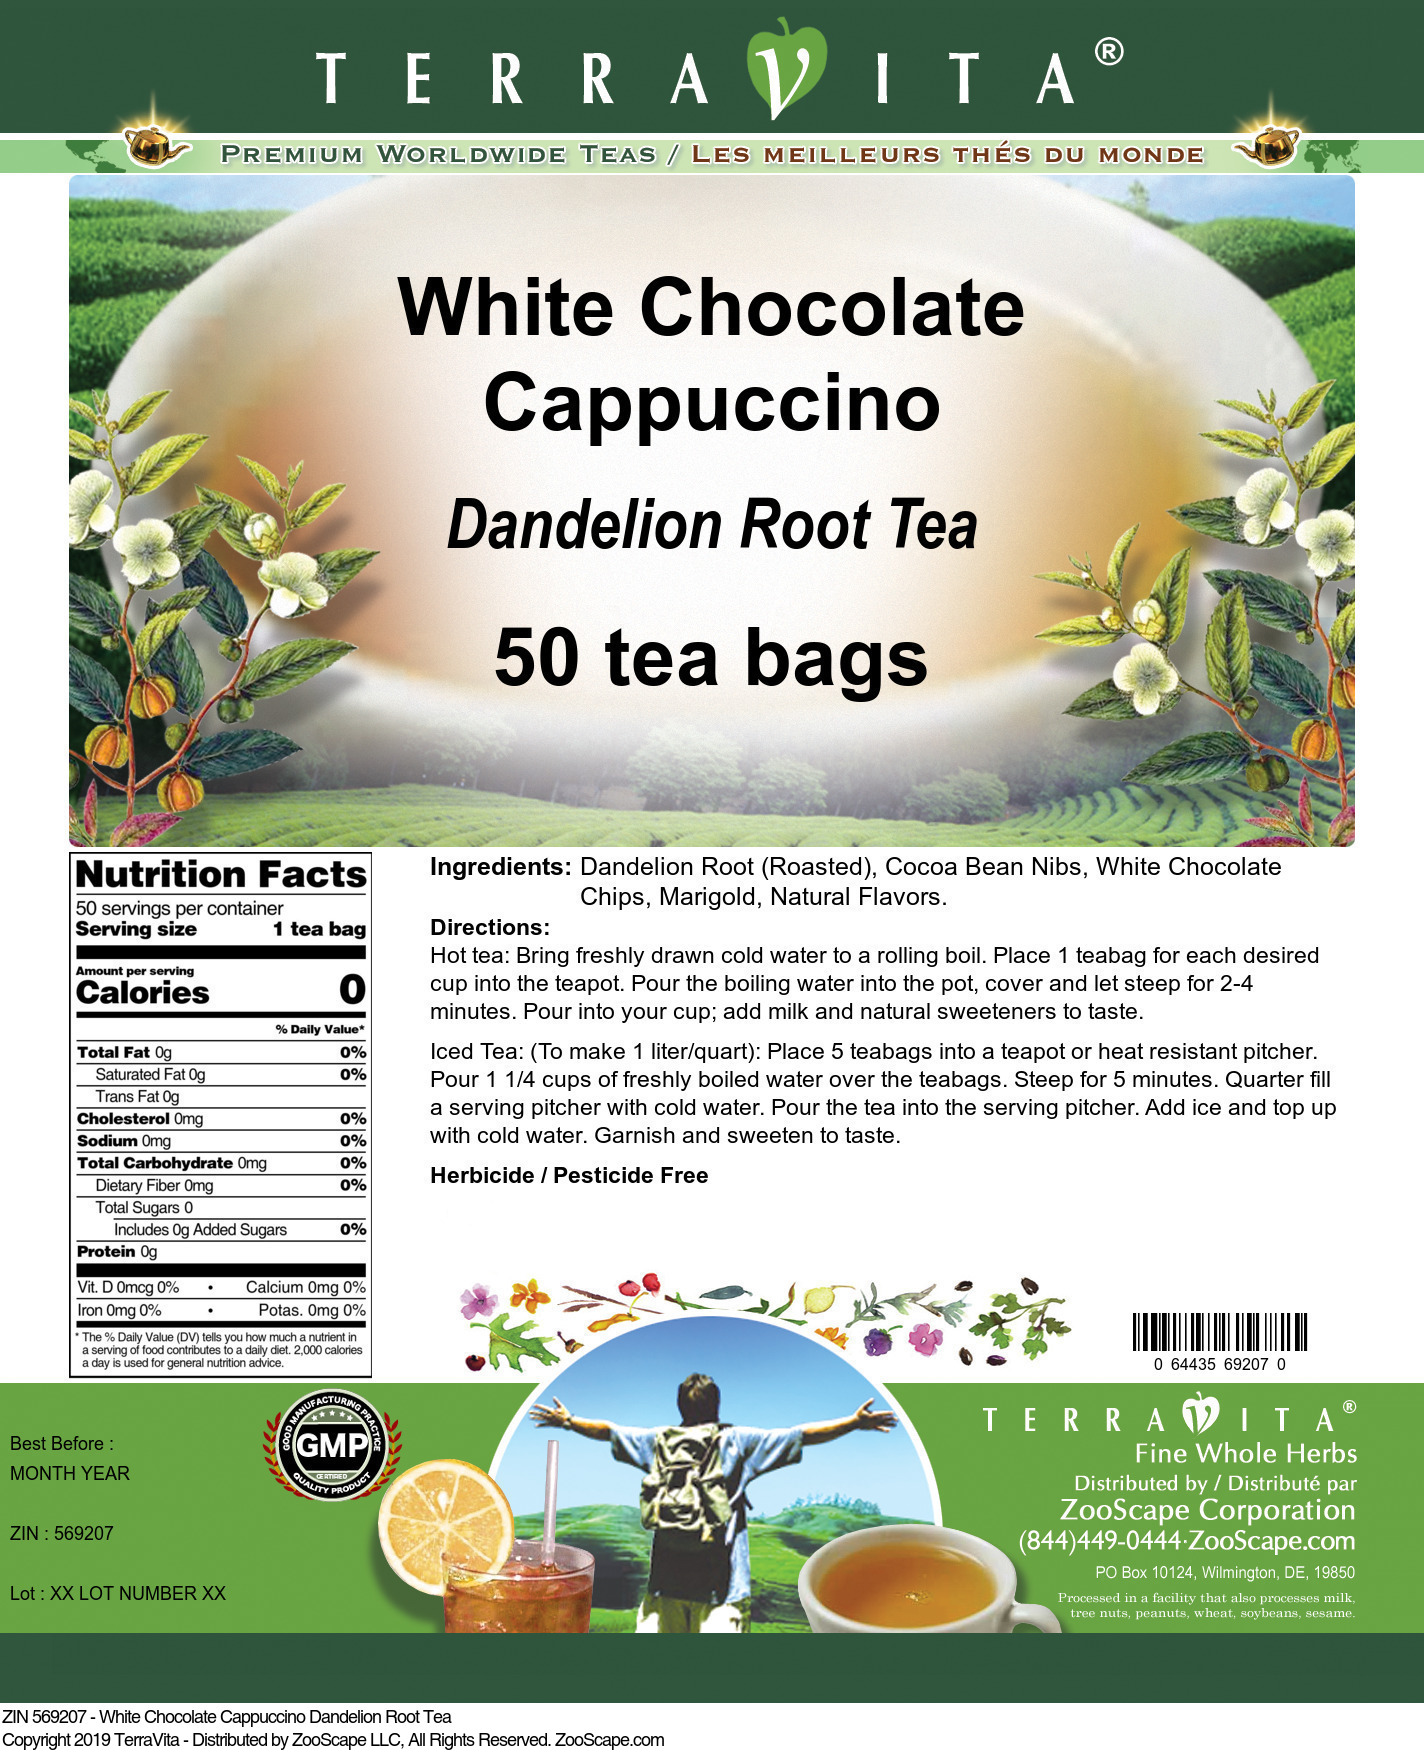 White Chocolate Cappuccino Dandelion Root Tea - Label